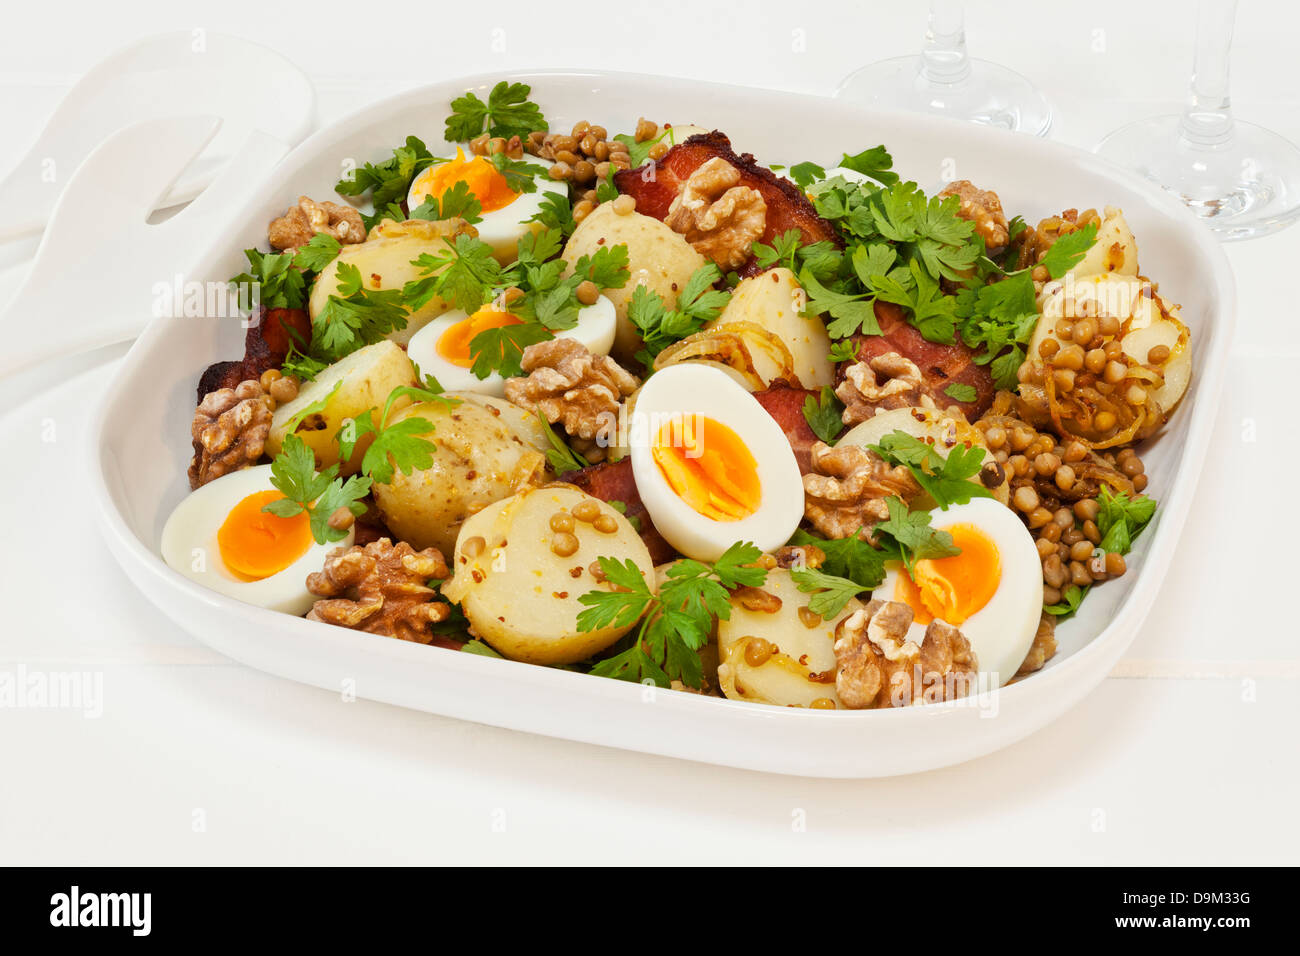 La Salade de pommes de terre avec des oeufs et de lentilles - Salade de pommes de terre tiède avec l'oeuf, les lentilles, le persil, Lardons, Noix, oignon caramélisé et à la moutarde. Banque D'Images